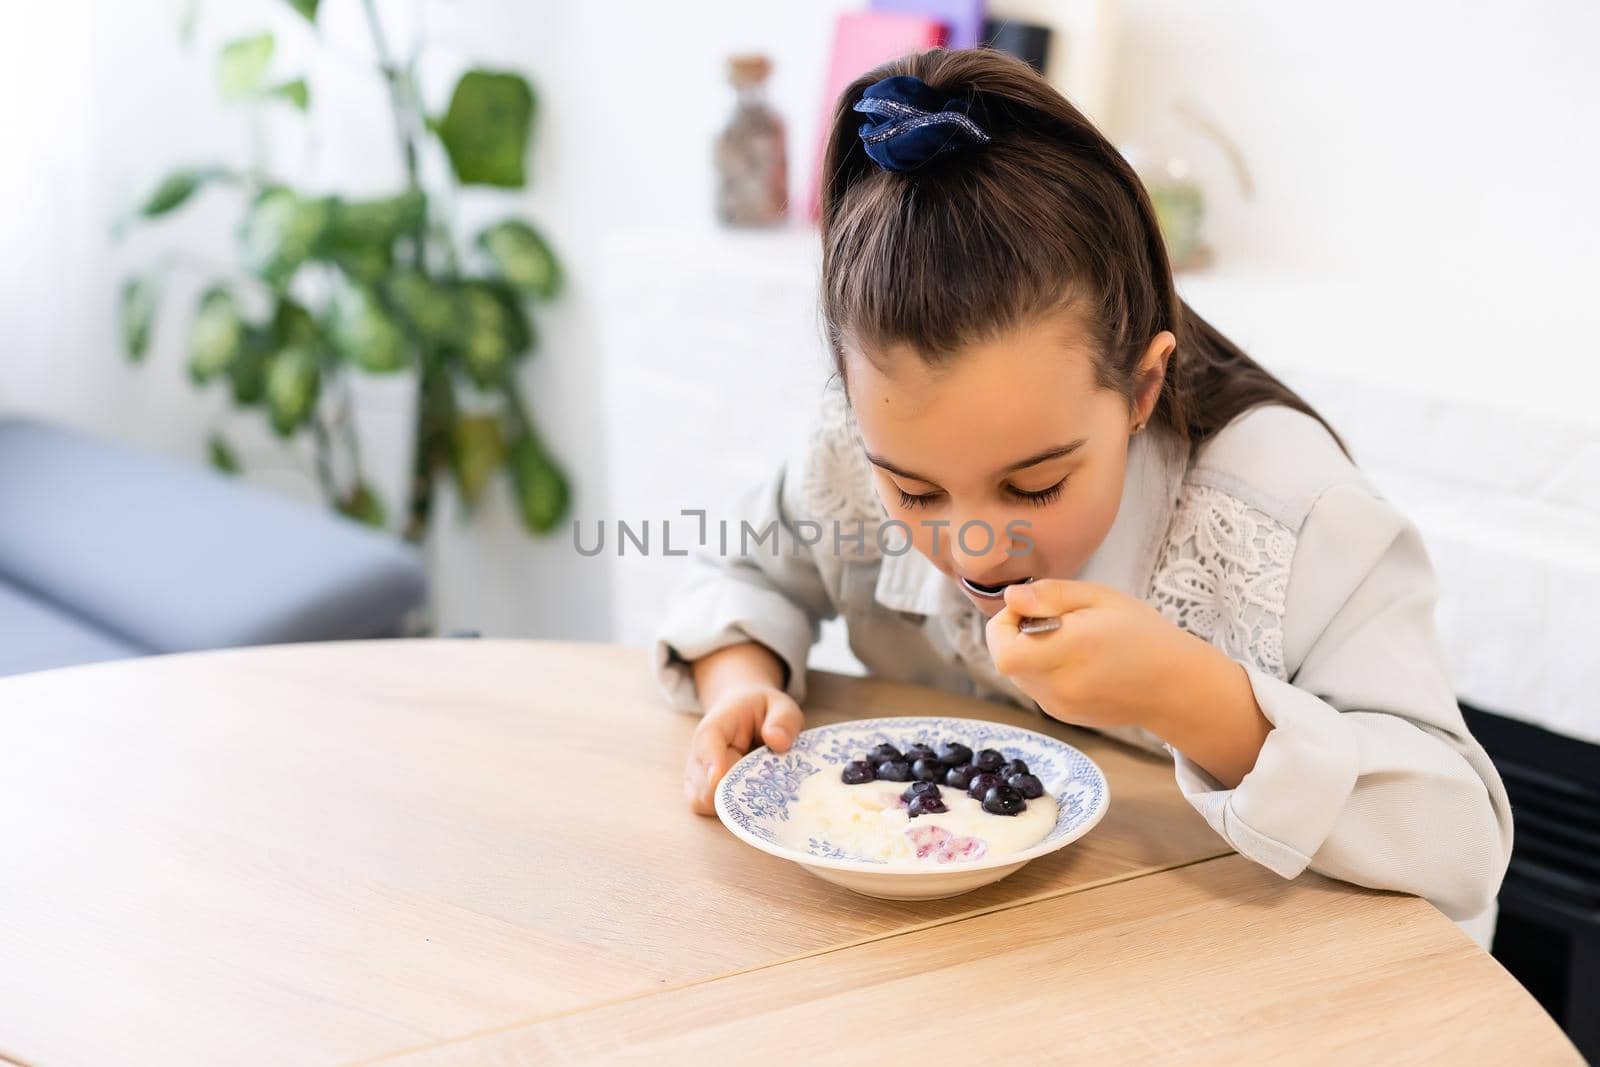 little girl eating porridge with blueberries by Andelov13